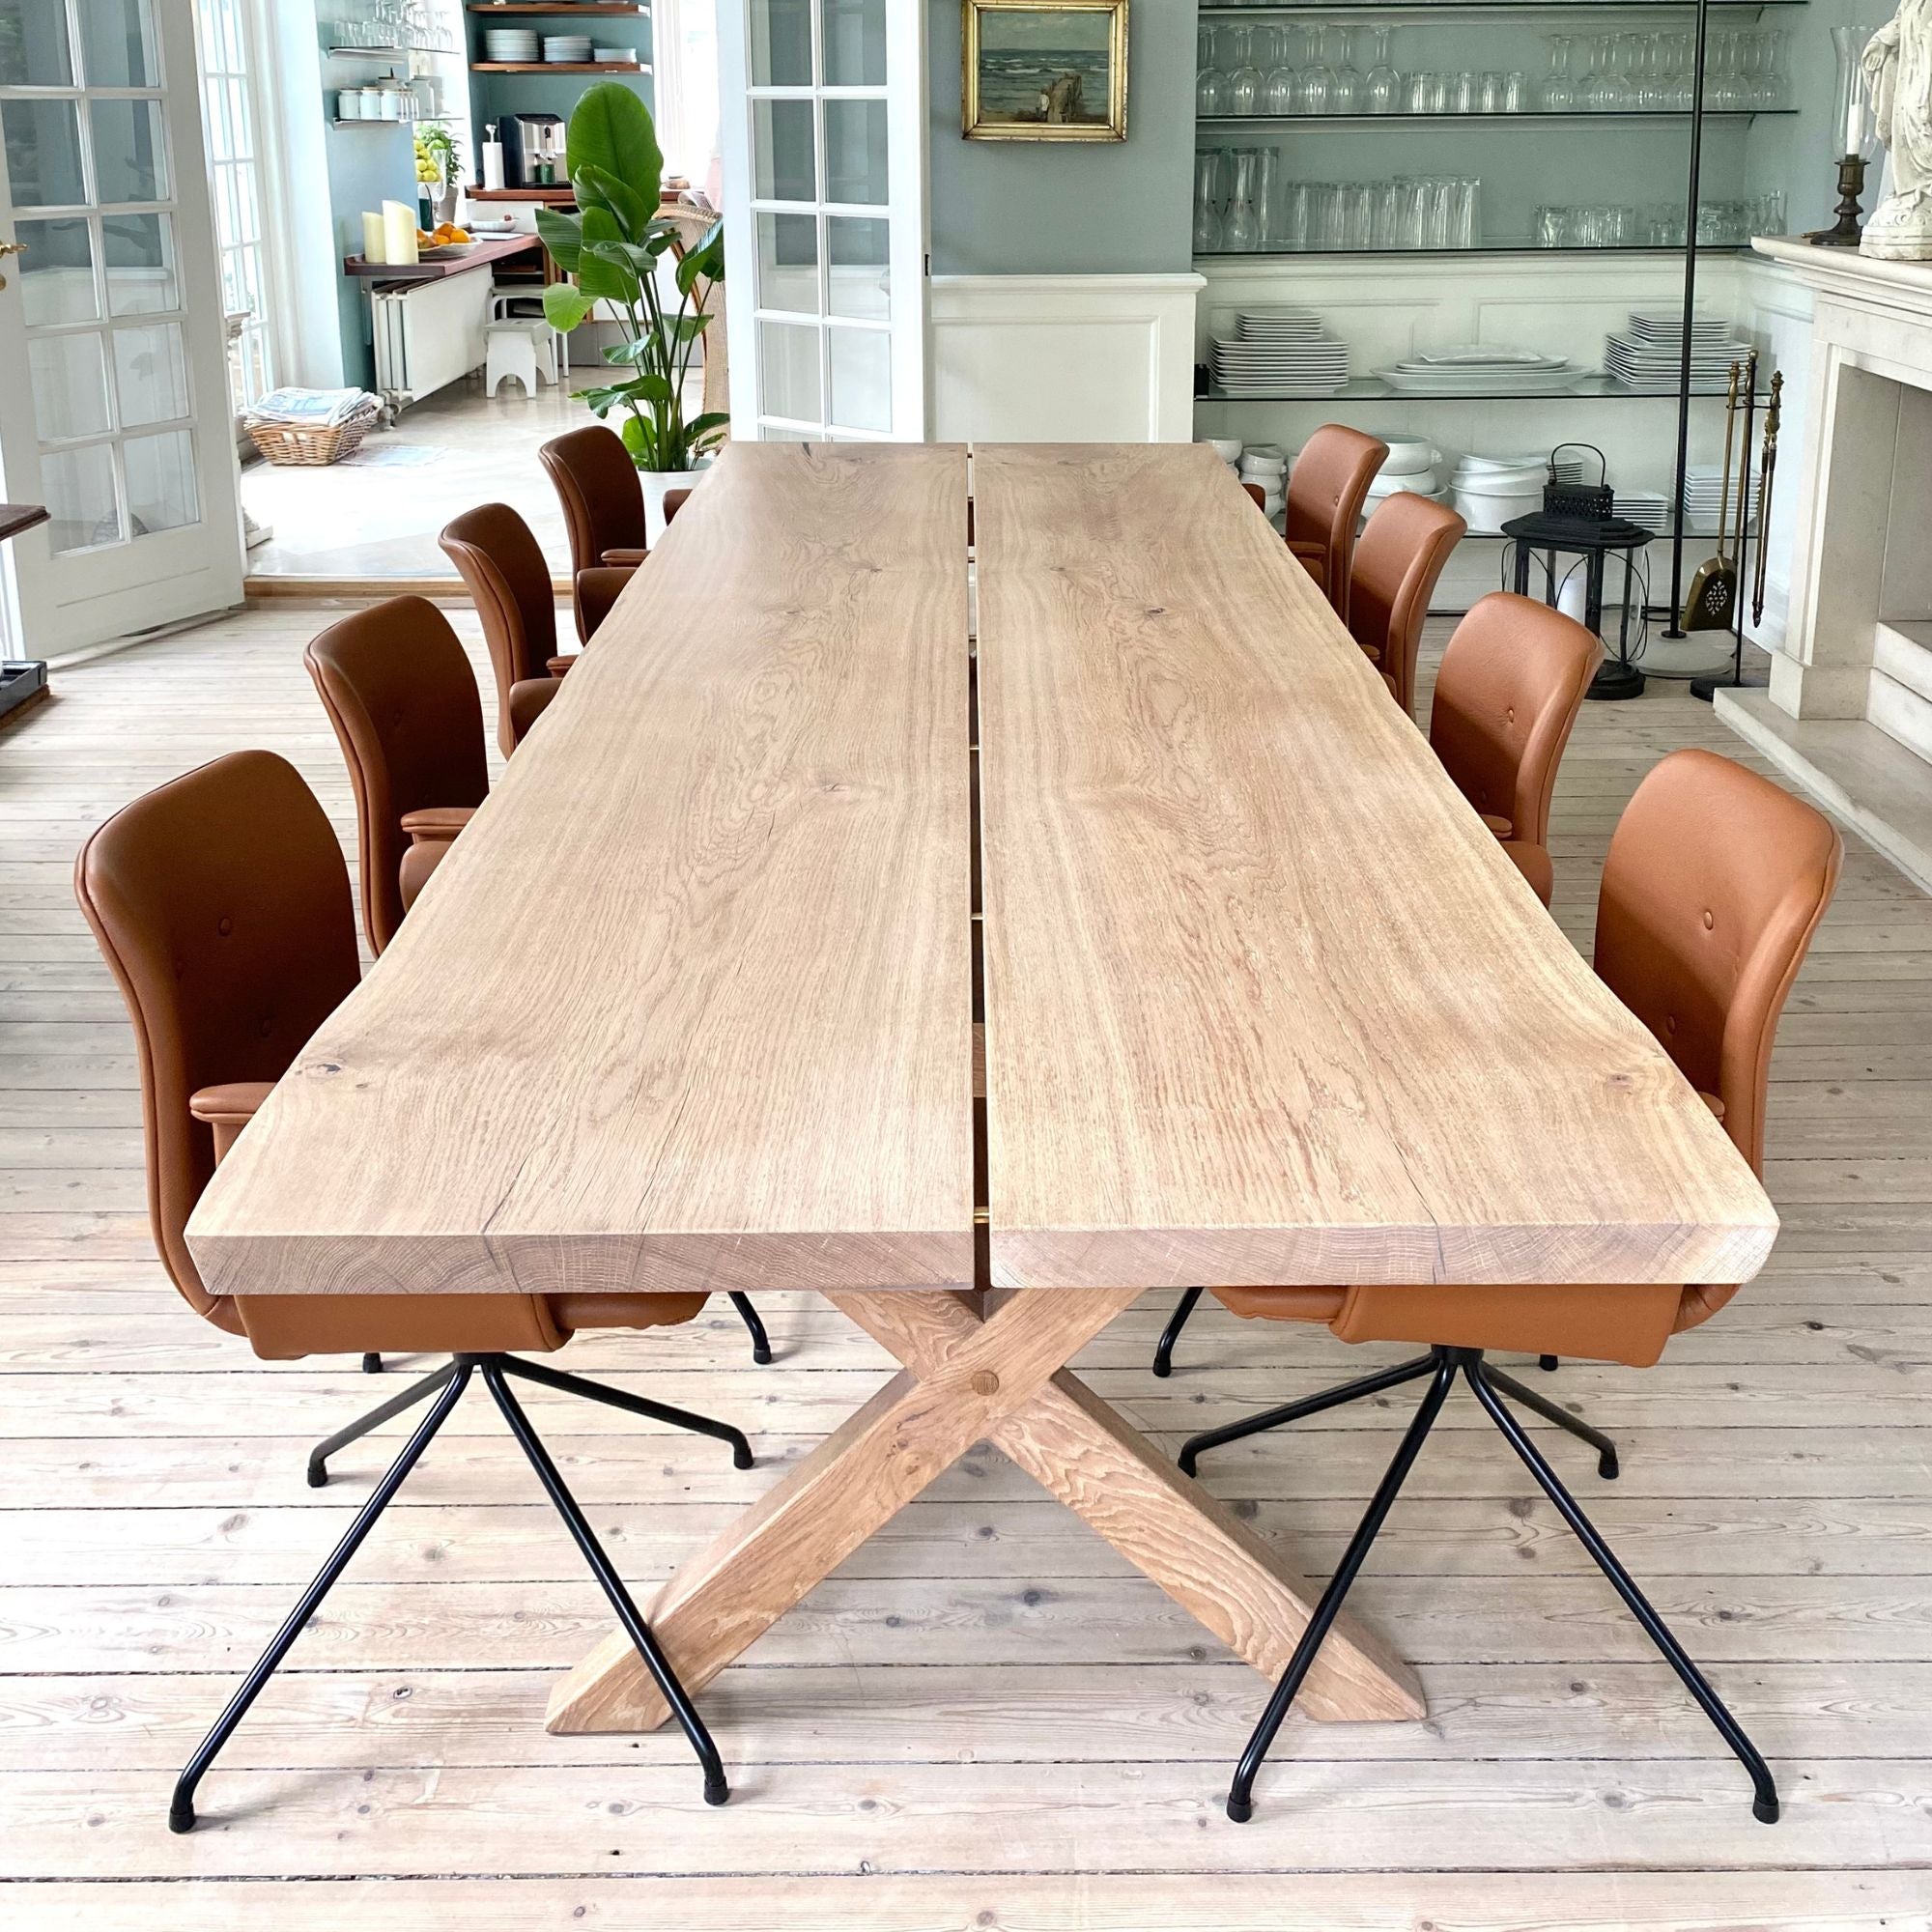 Gillelejebordet - Egetræs plankebord - Snedker Spisebord - Hvid olie - Natur kant